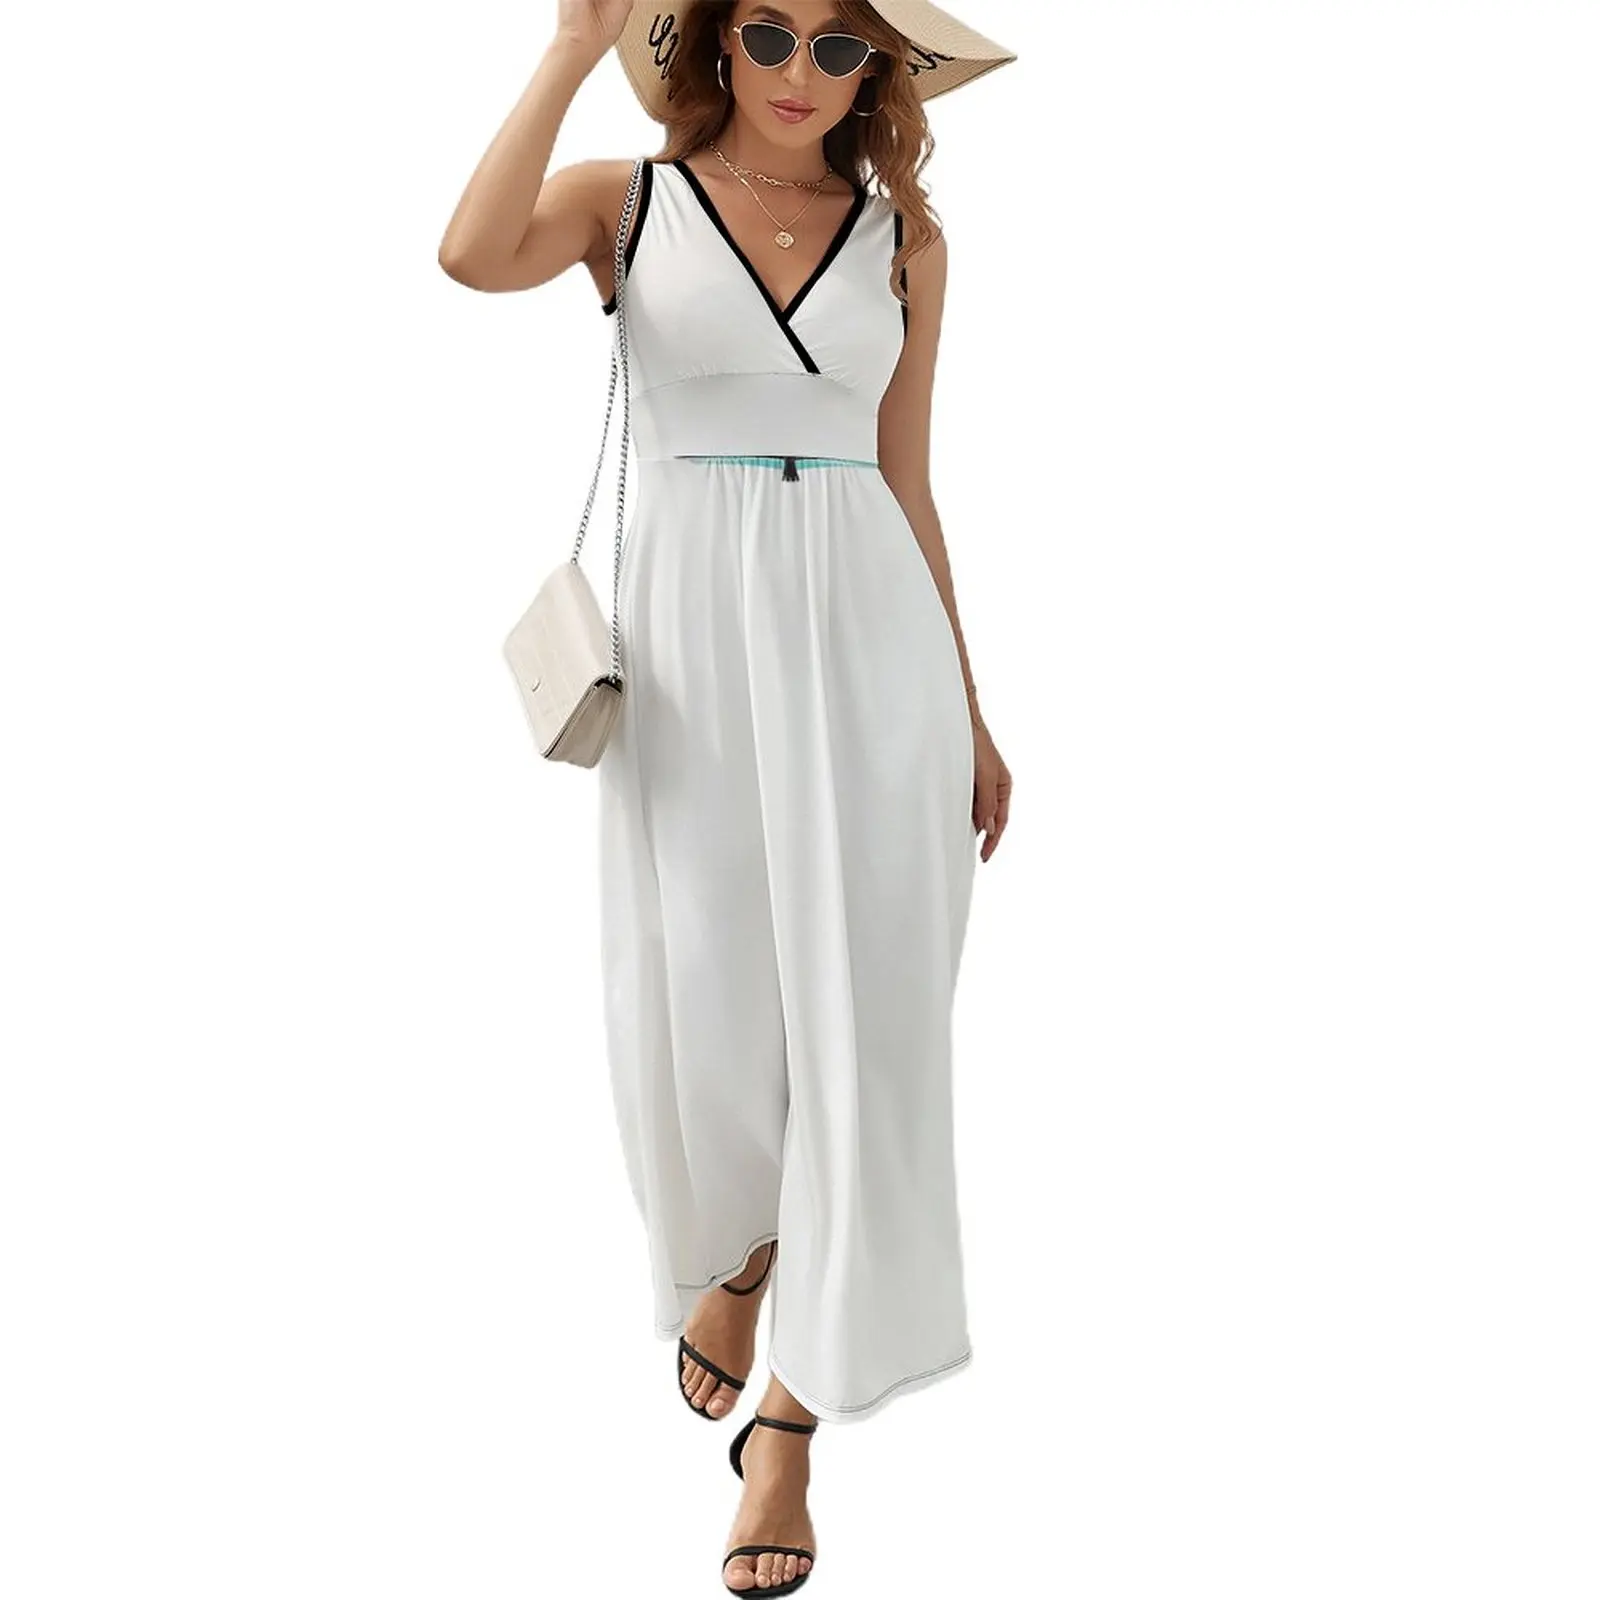 

Thunderbird Emblem White Sleeveless Dress Women's summer skirt elegant dresses plus sizes Beachwear